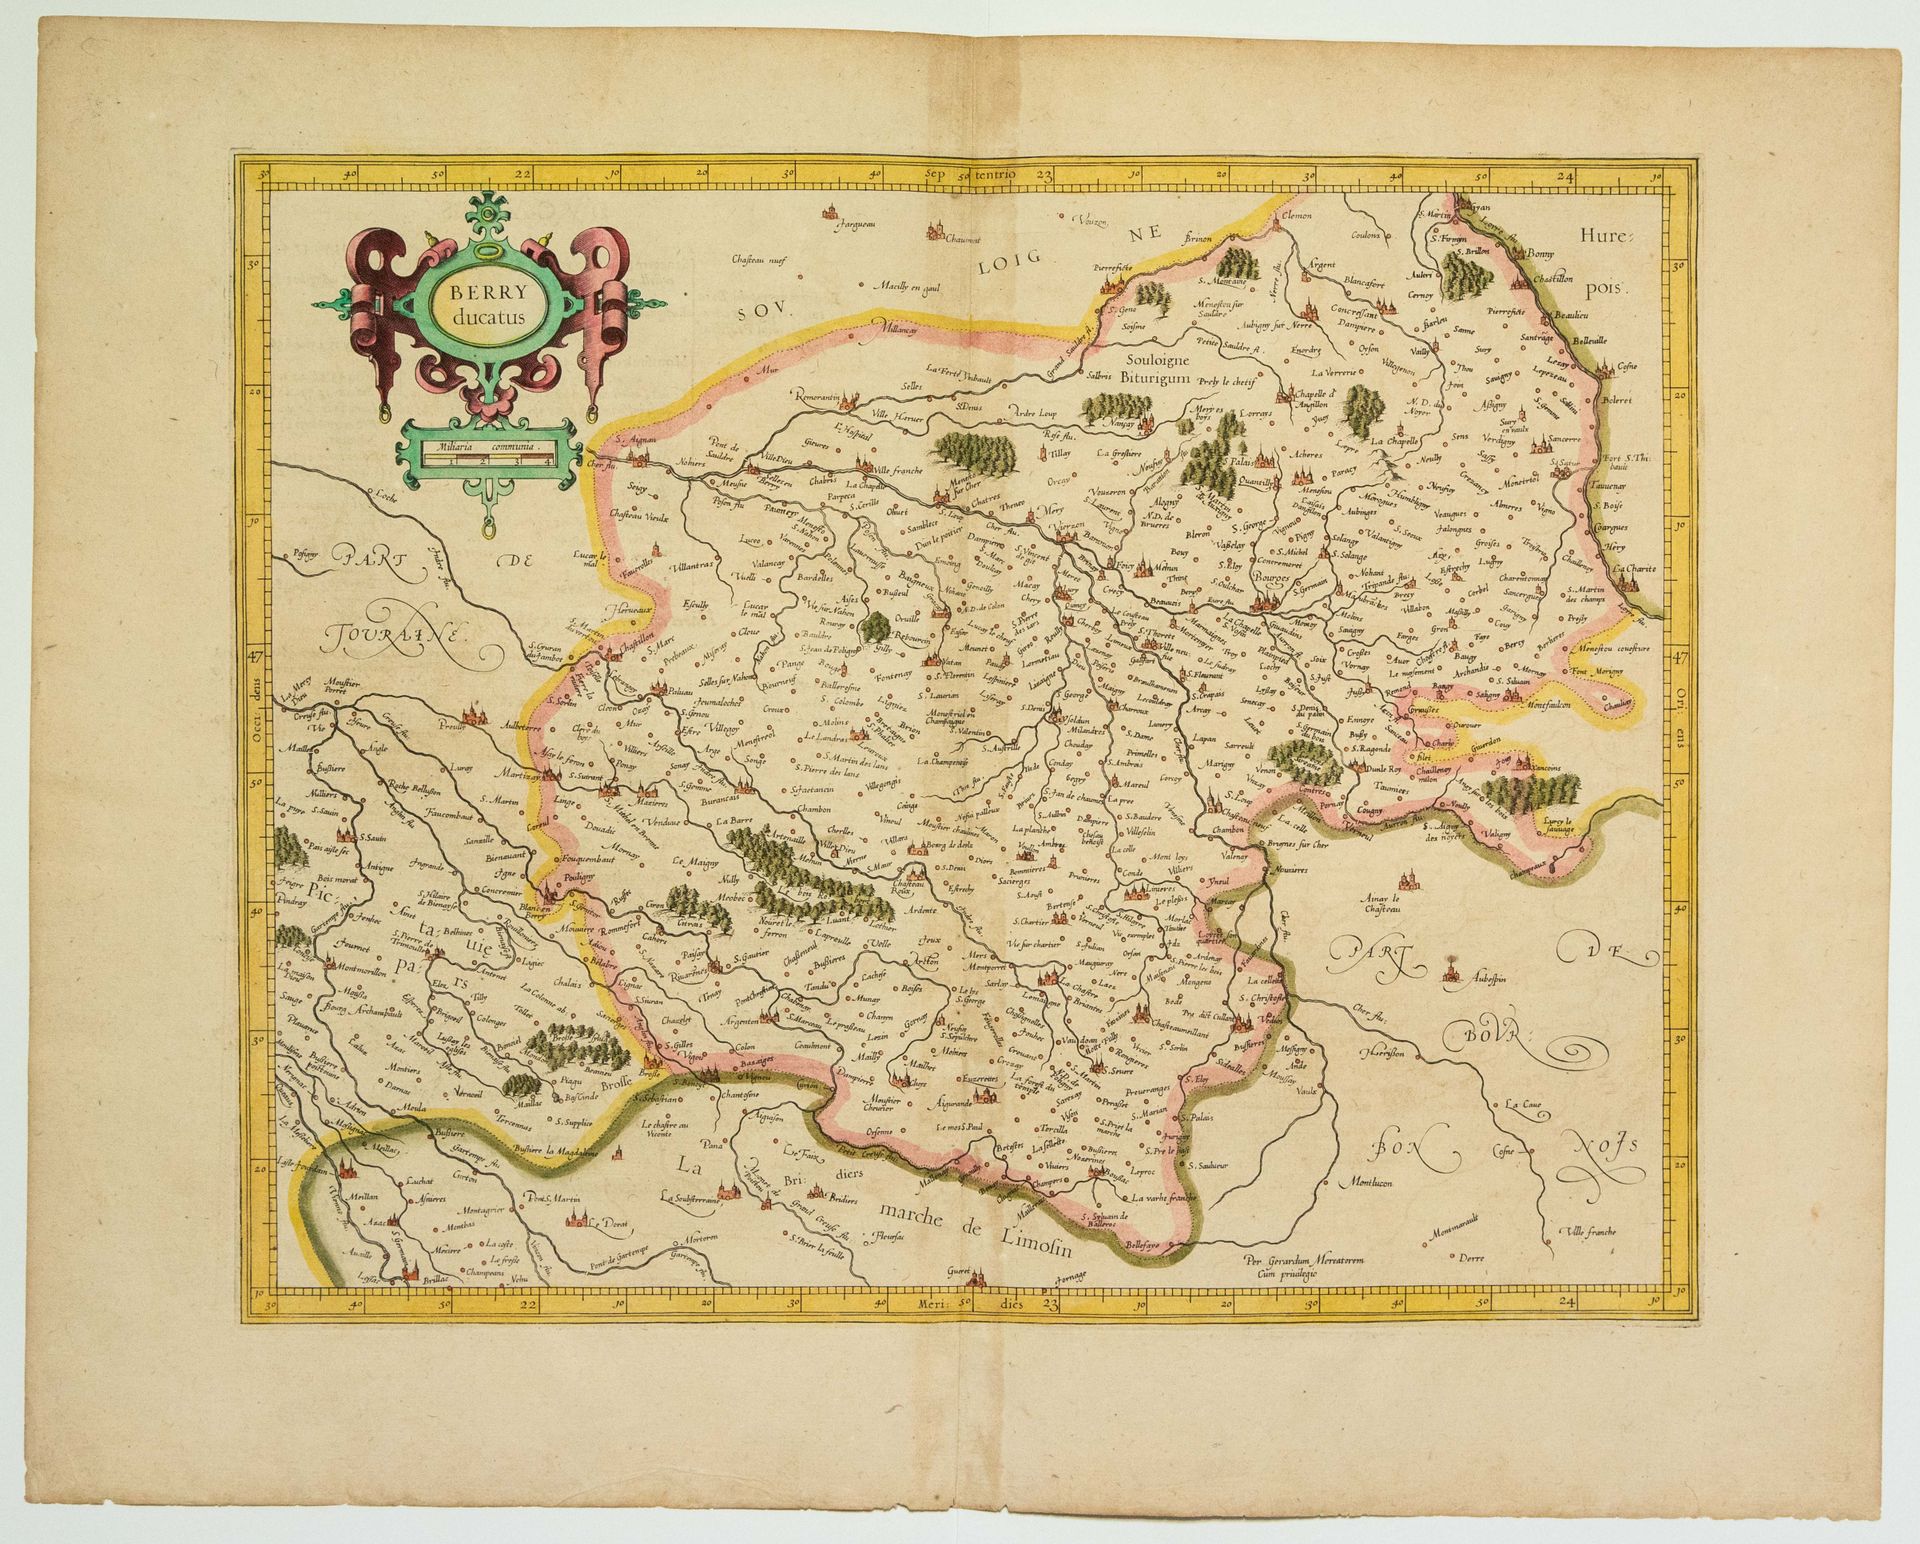 Null Mappa del XVII secolo: "BERRY Ducatis" (c.1634) (54 x 43 cm) Condizione B+.&hellip;